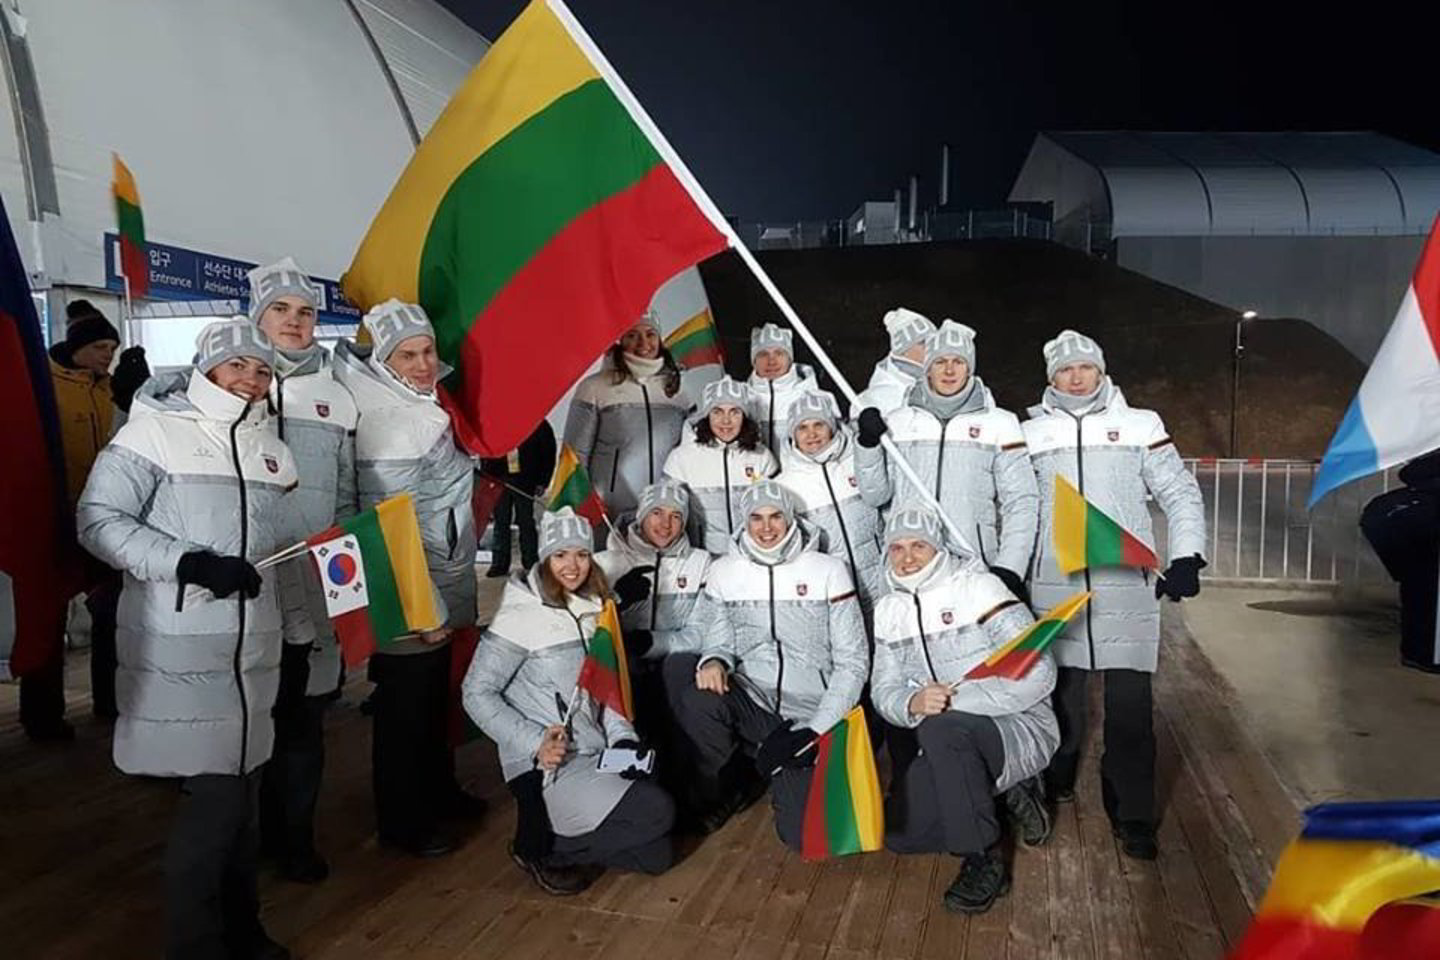  Lietuvos olimpinė delegacija Pjongčango žaidynių atidaryme.<br> Facebook nuotr.